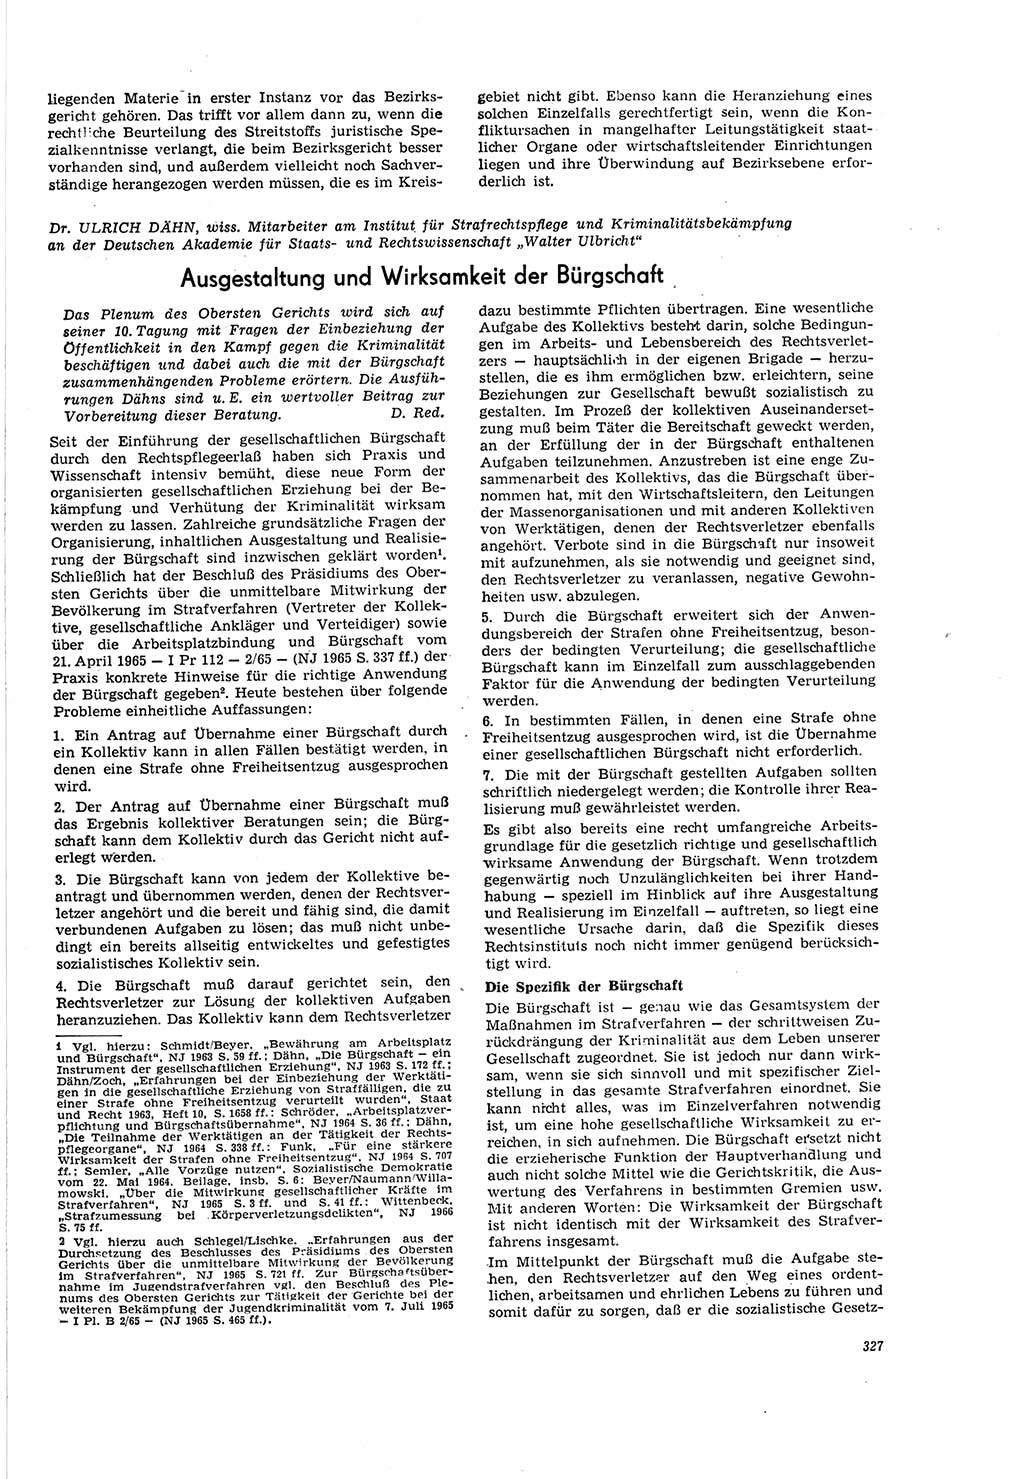 Neue Justiz (NJ), Zeitschrift für Recht und Rechtswissenschaft [Deutsche Demokratische Republik (DDR)], 20. Jahrgang 1966, Seite 327 (NJ DDR 1966, S. 327)